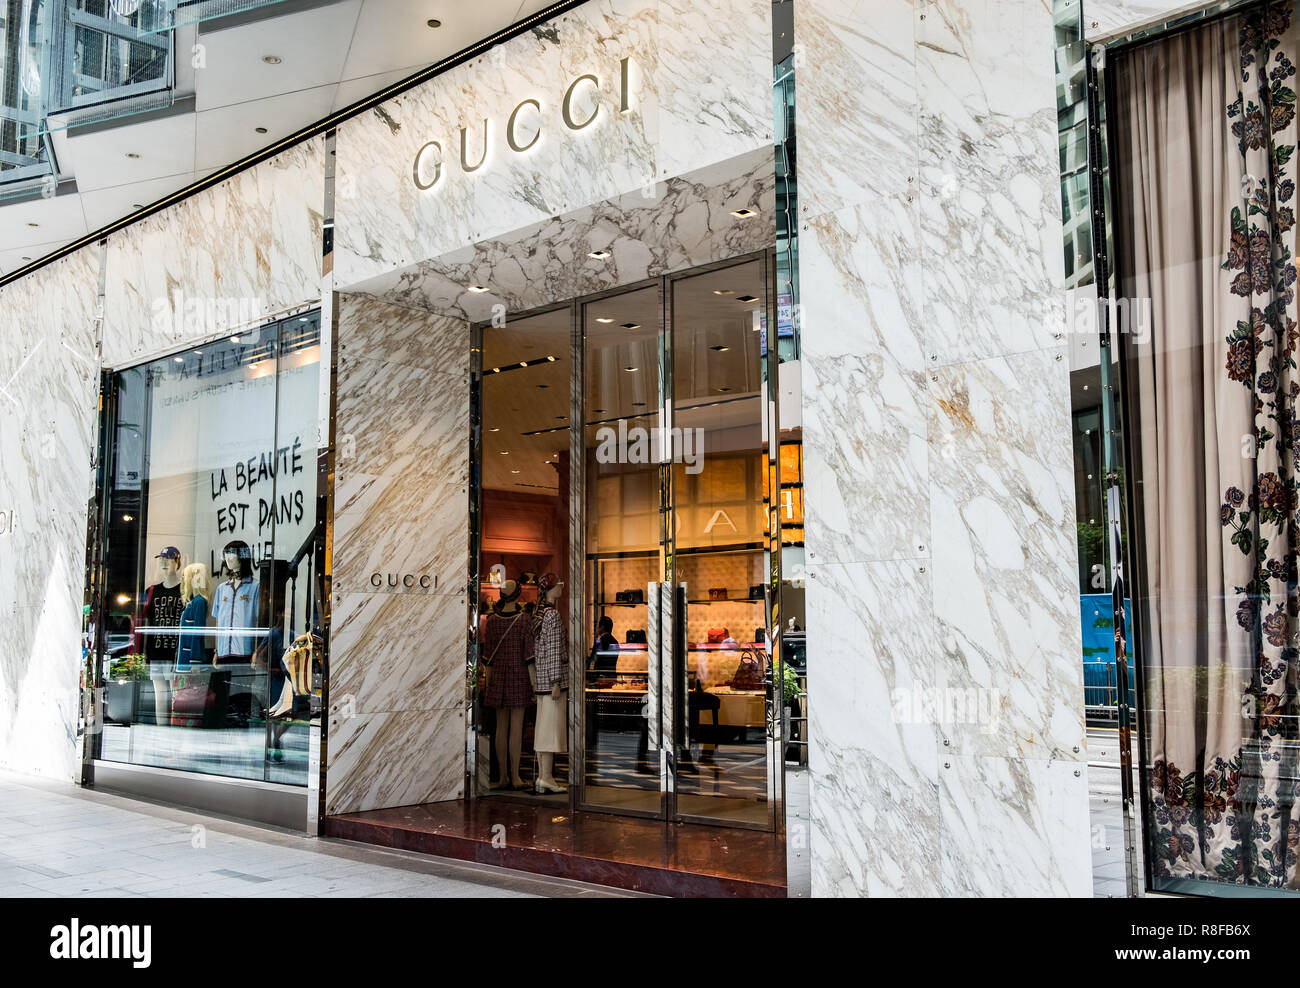 Hong Kong, April 7, 2019: Gucci store in Hong Kong Stock Photo - Alamy